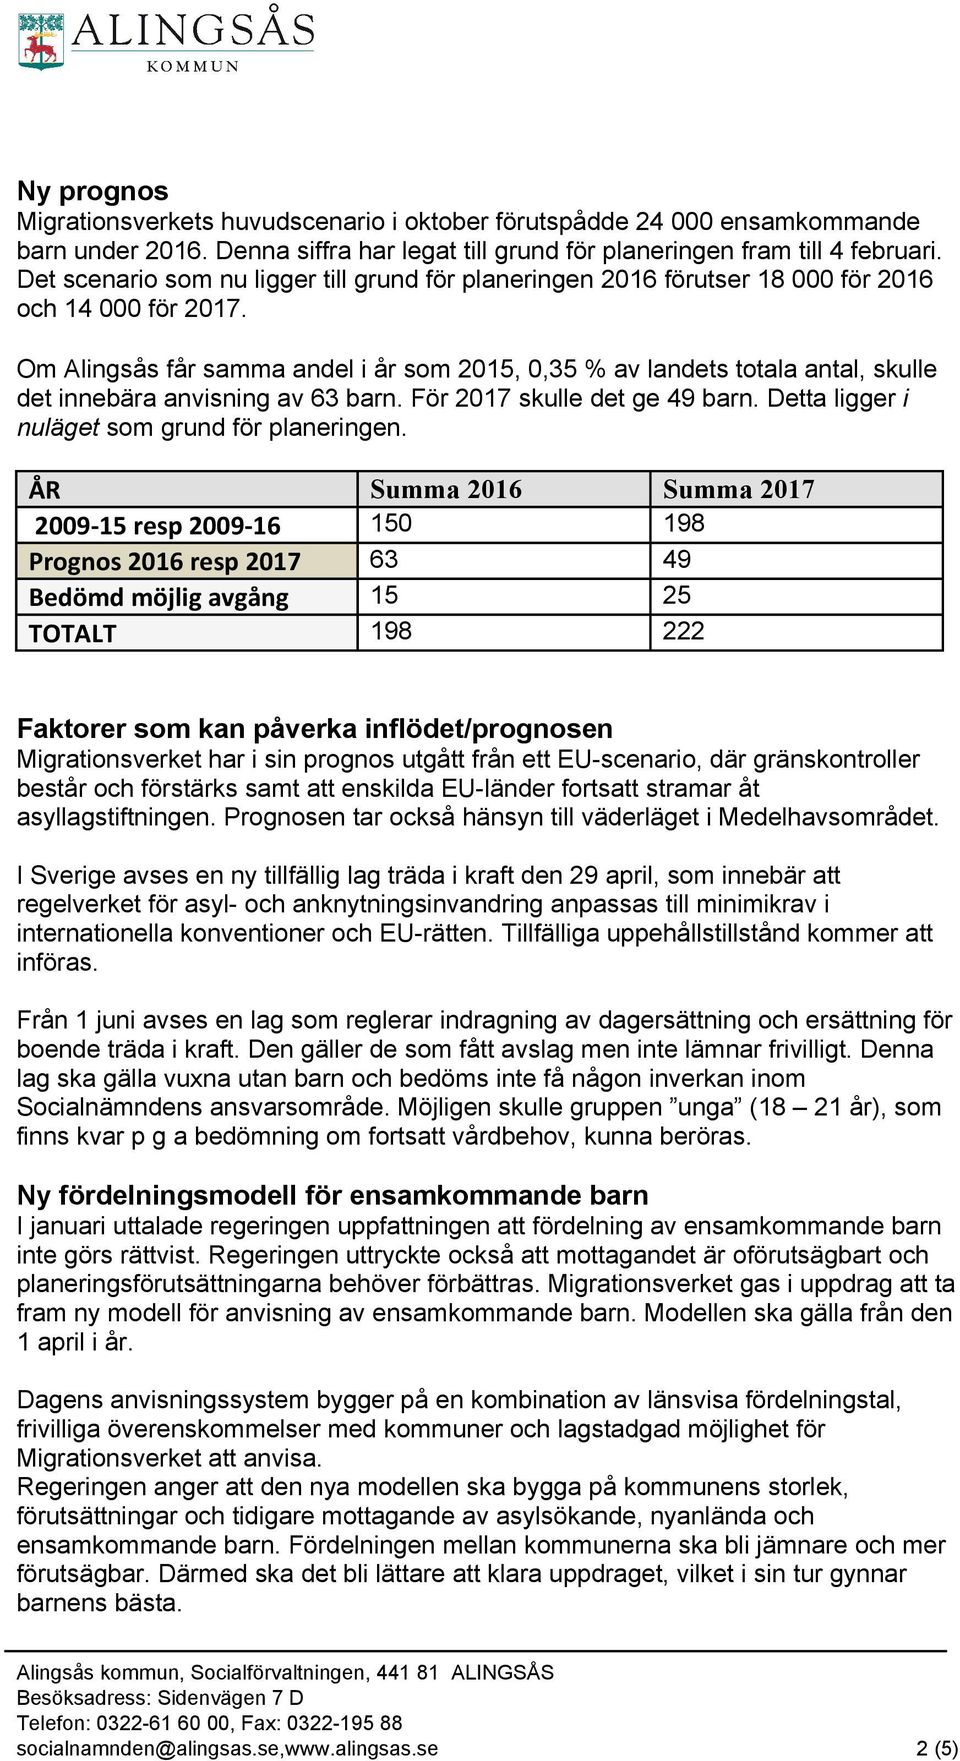 Om Alingsås får samma andel i år som 2015, 0,35 % av landets totala antal, skulle det innebära anvisning av 63 barn. För 2017 skulle det ge 49 barn. Detta ligger i nuläget som grund för planeringen.